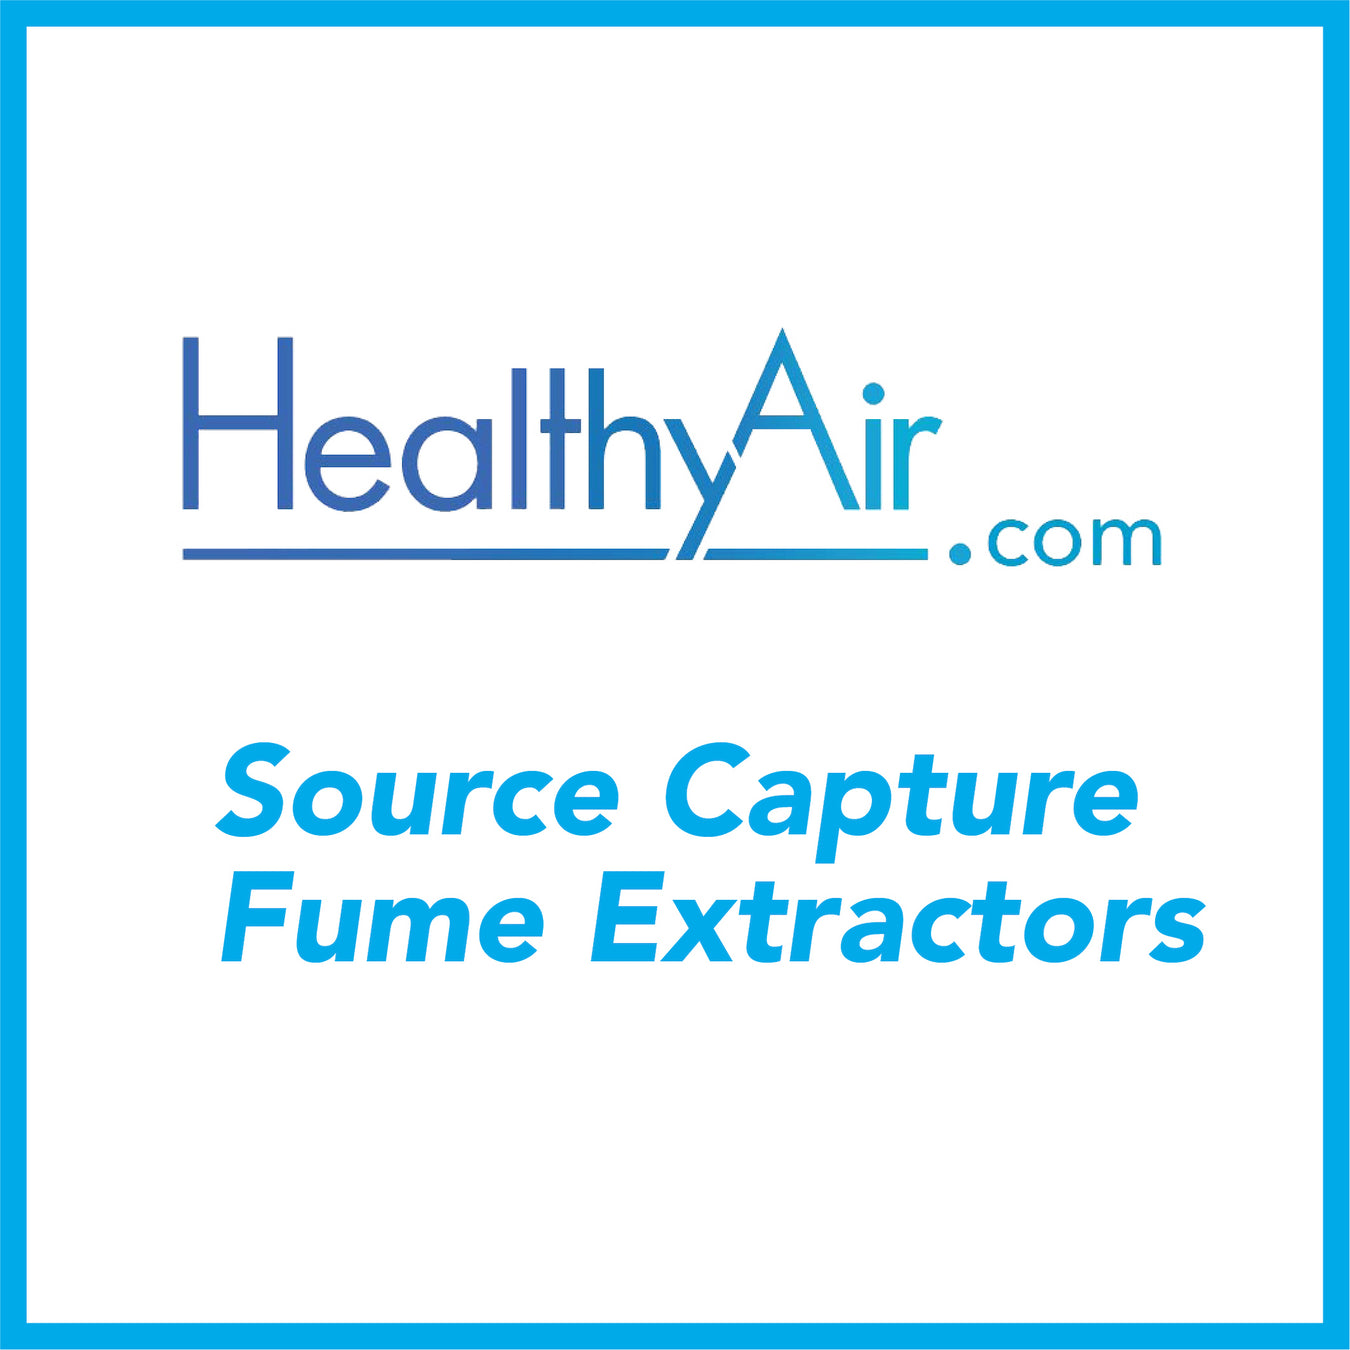 Source Capture Fume Extractors